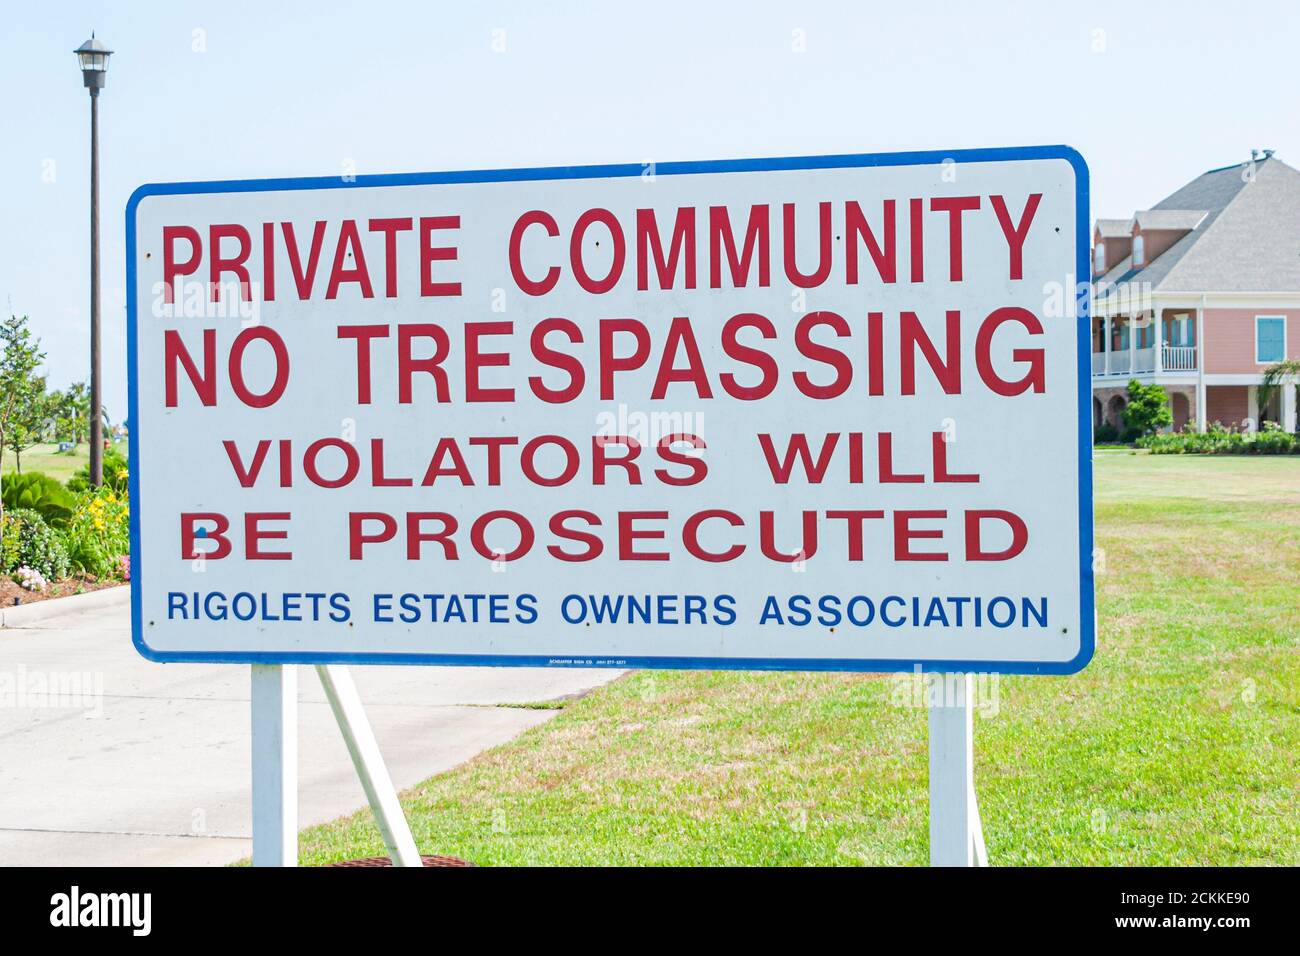 Slidell Louisiana, unterzeichnen private Gemeinschaft Nachbarschaft Wohngebiet, keine Trespassing Verletzer verfolgt, Szene in einem Foto Warnung, Eigentümer Verein Stockfoto